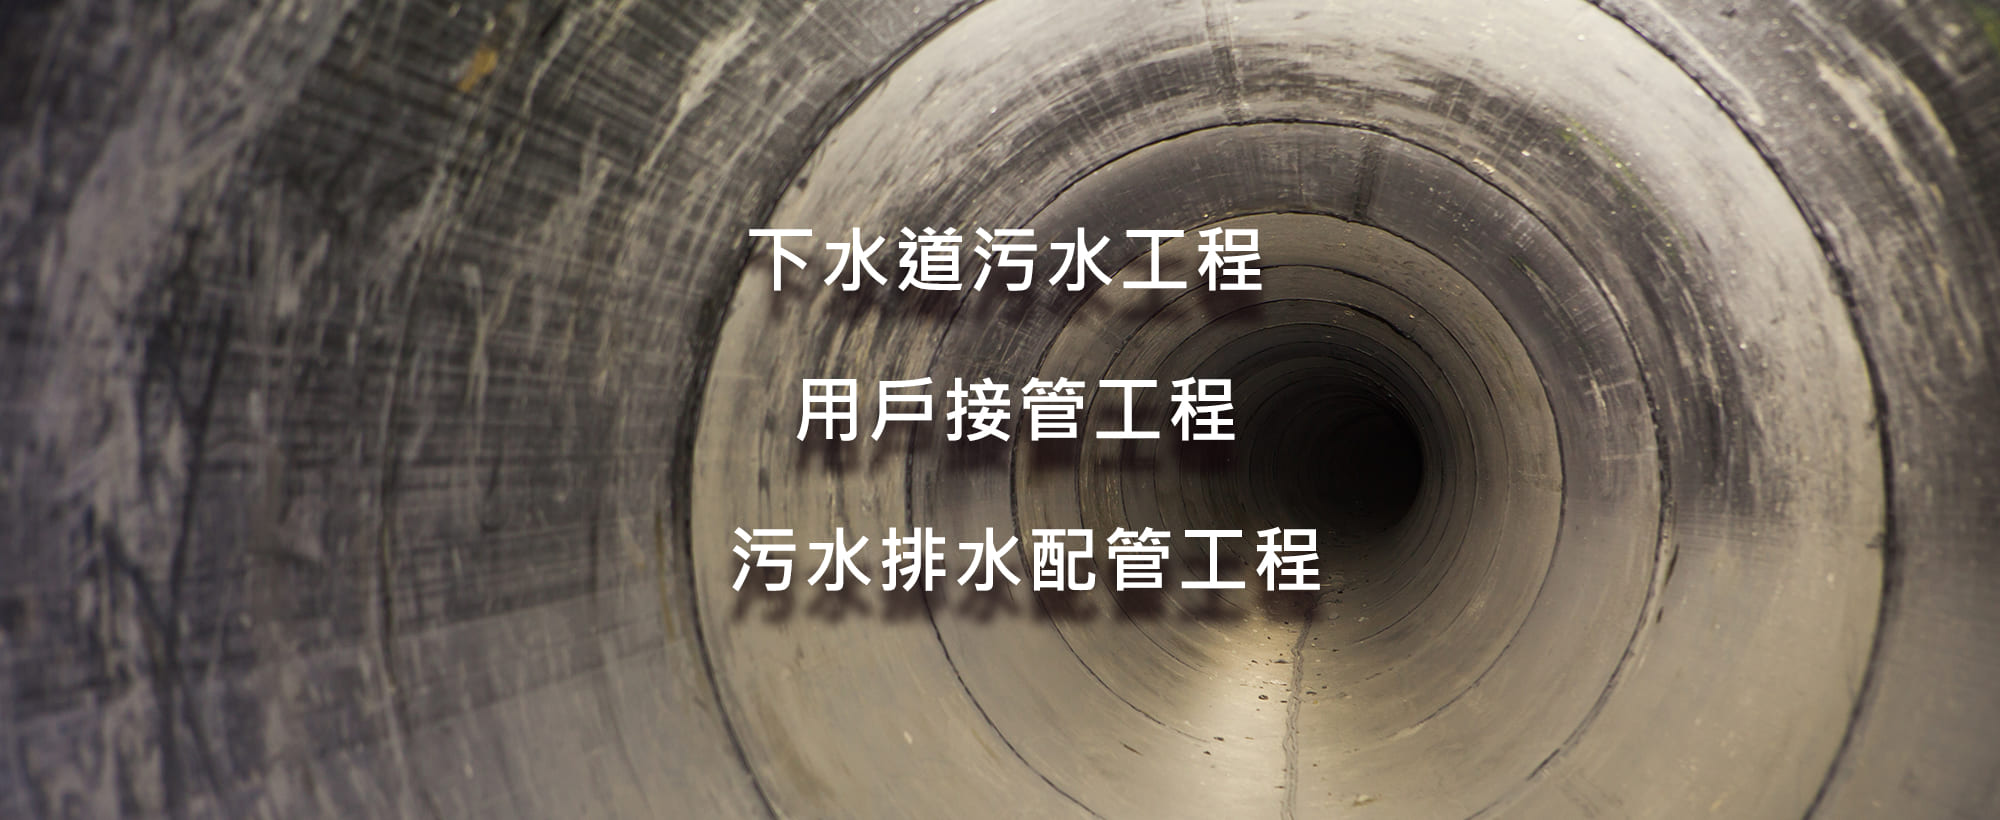 廣珅工程興業有限公司 台北污水下水道工程 台北用戶接管工程 台北污水廢水配管工程